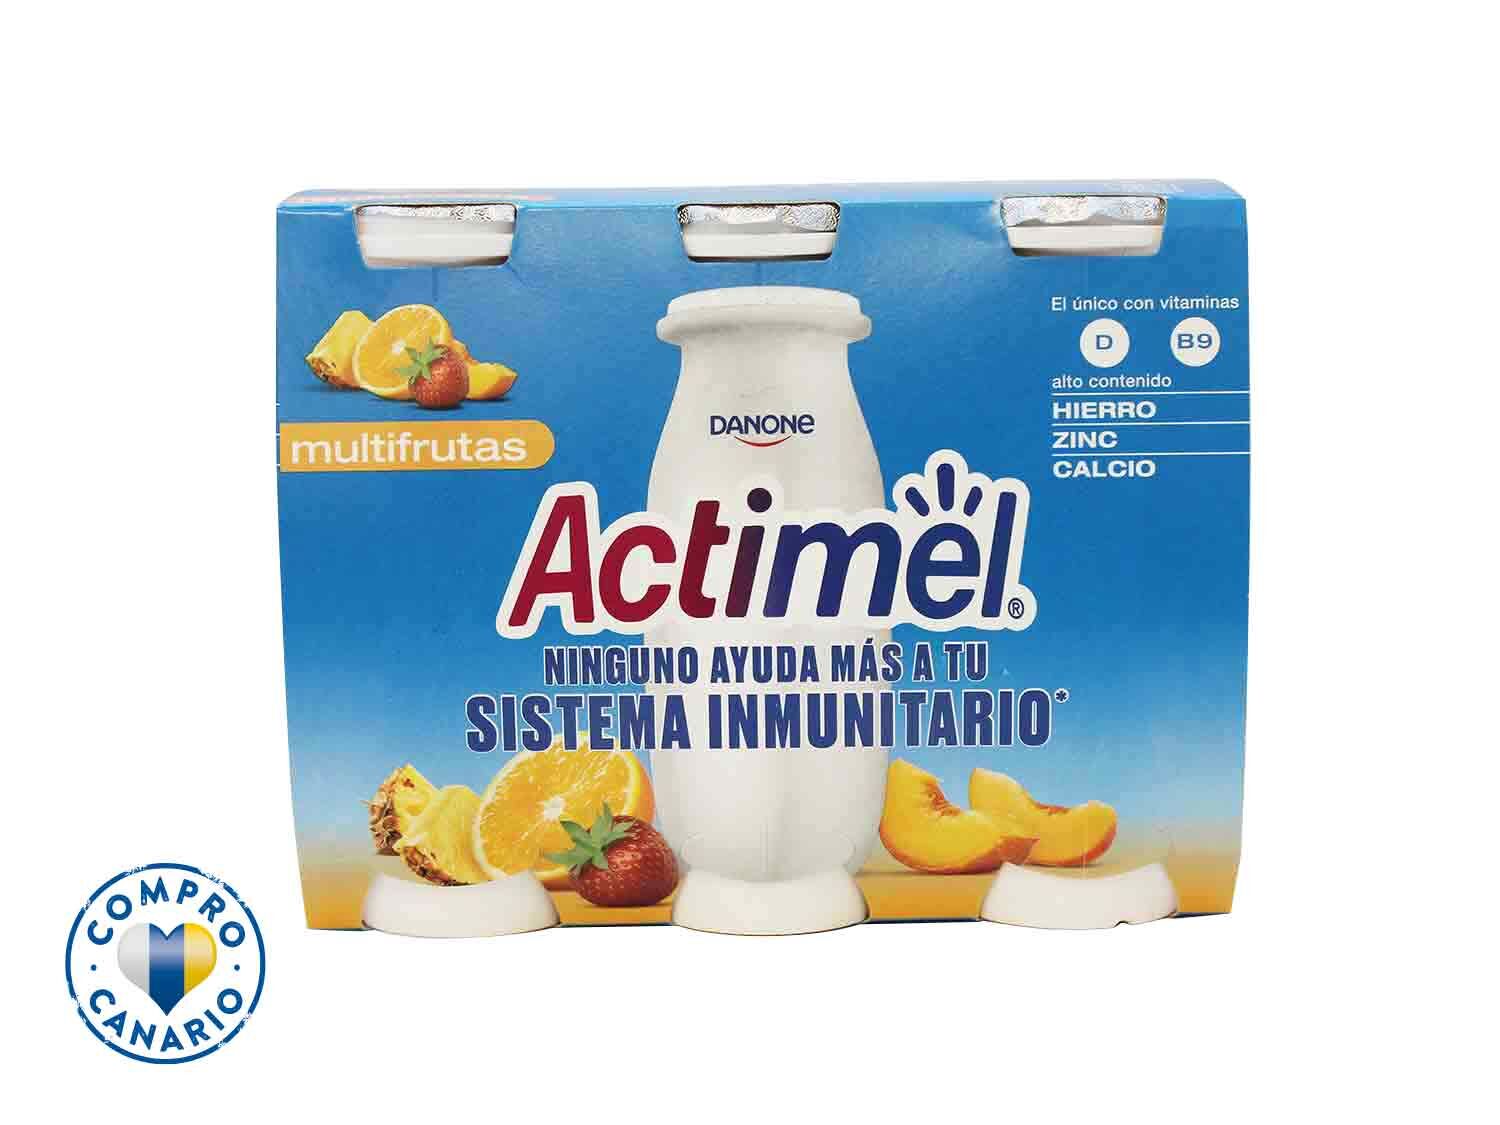 Danone® Actimel multifrutas